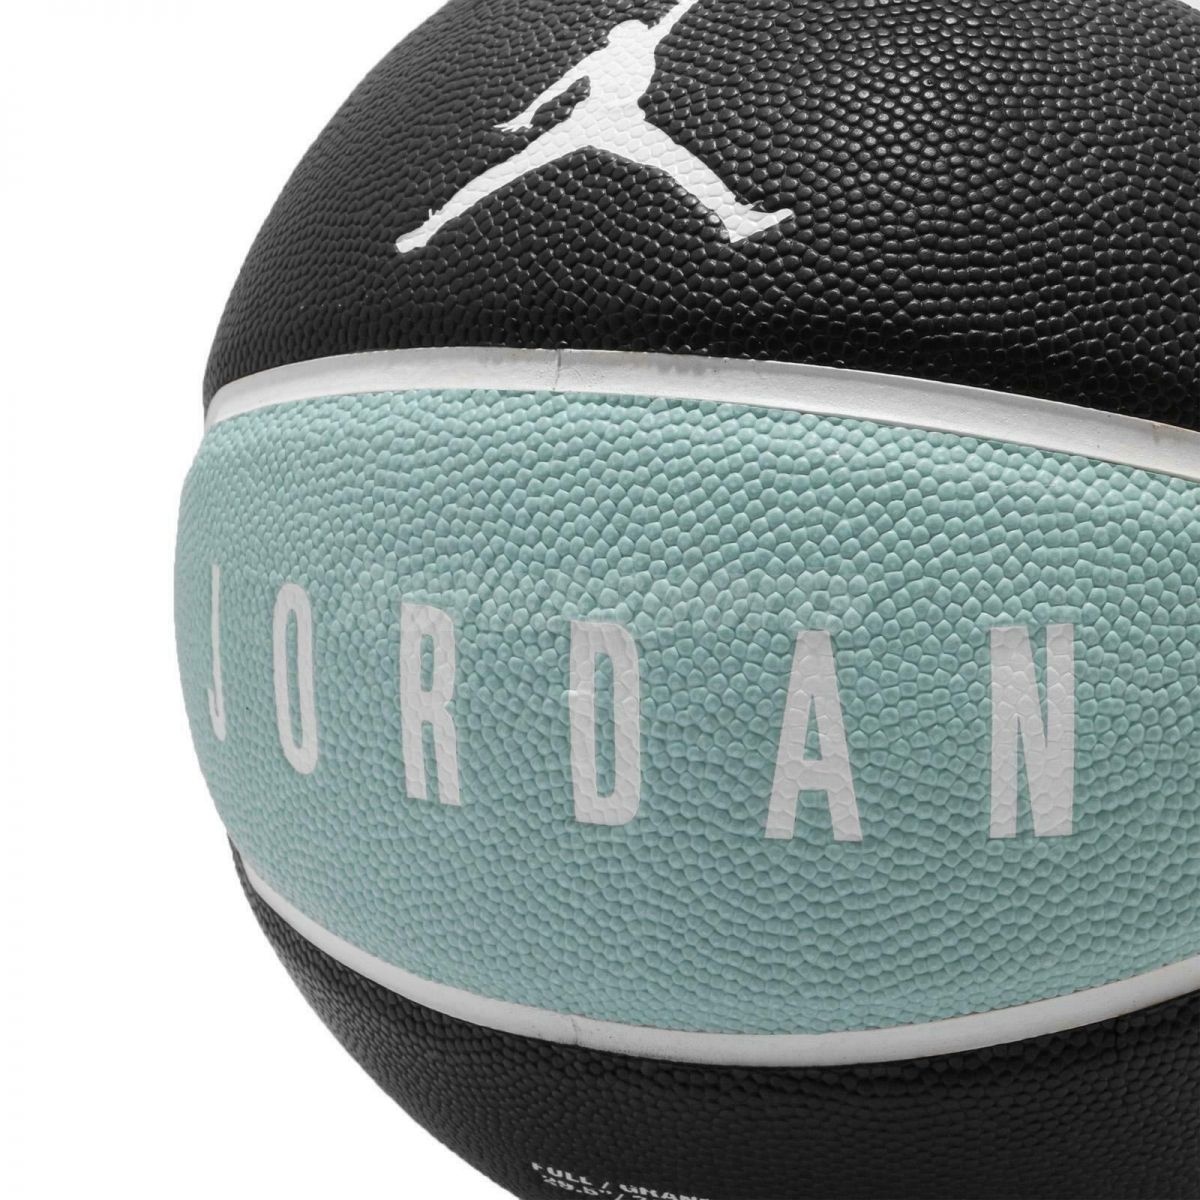 Nike en Jordan Basketballen